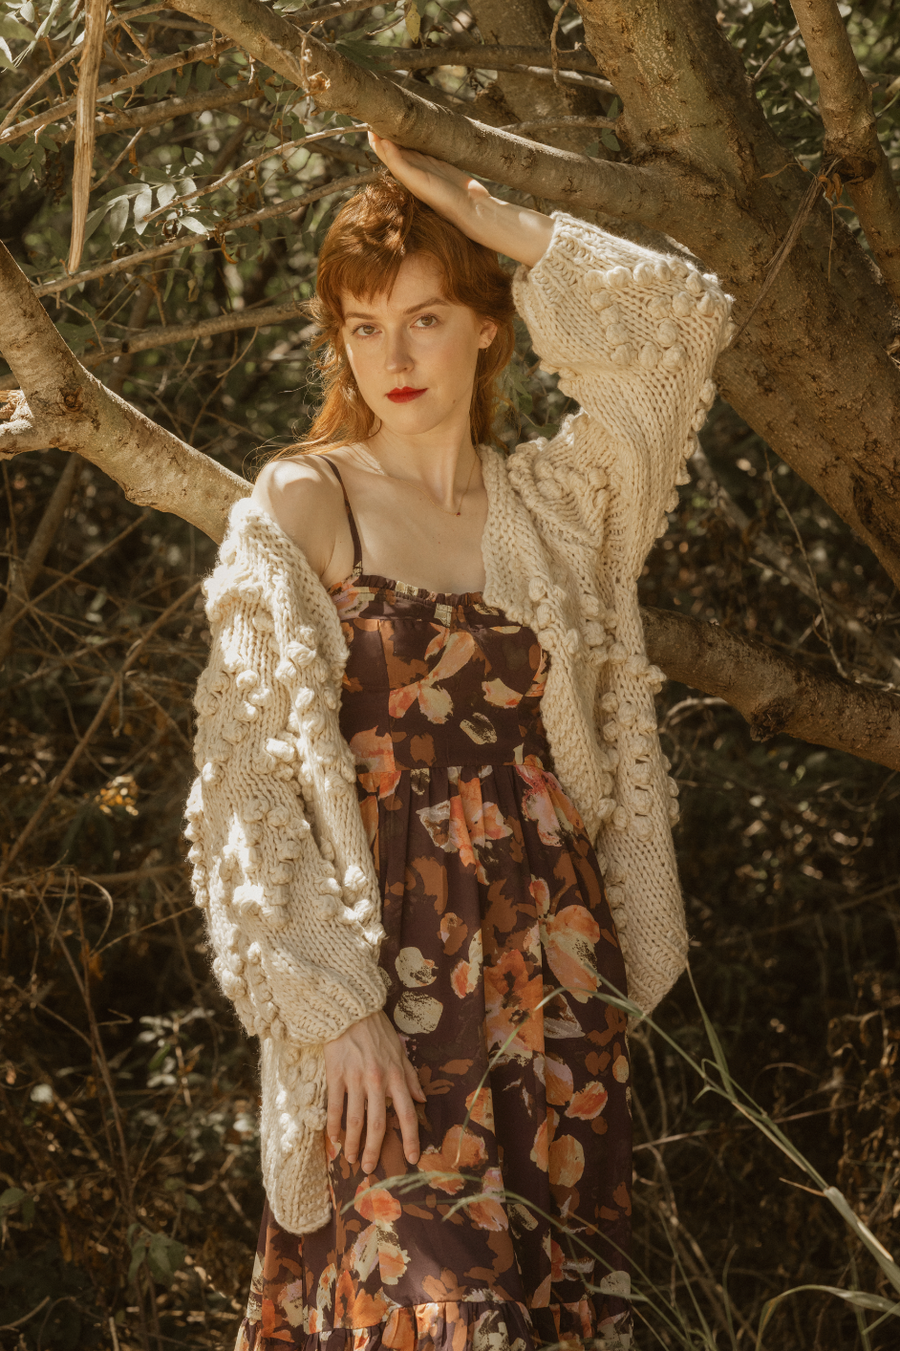 Elisabeta Dress in Chestnut Autumn Floral